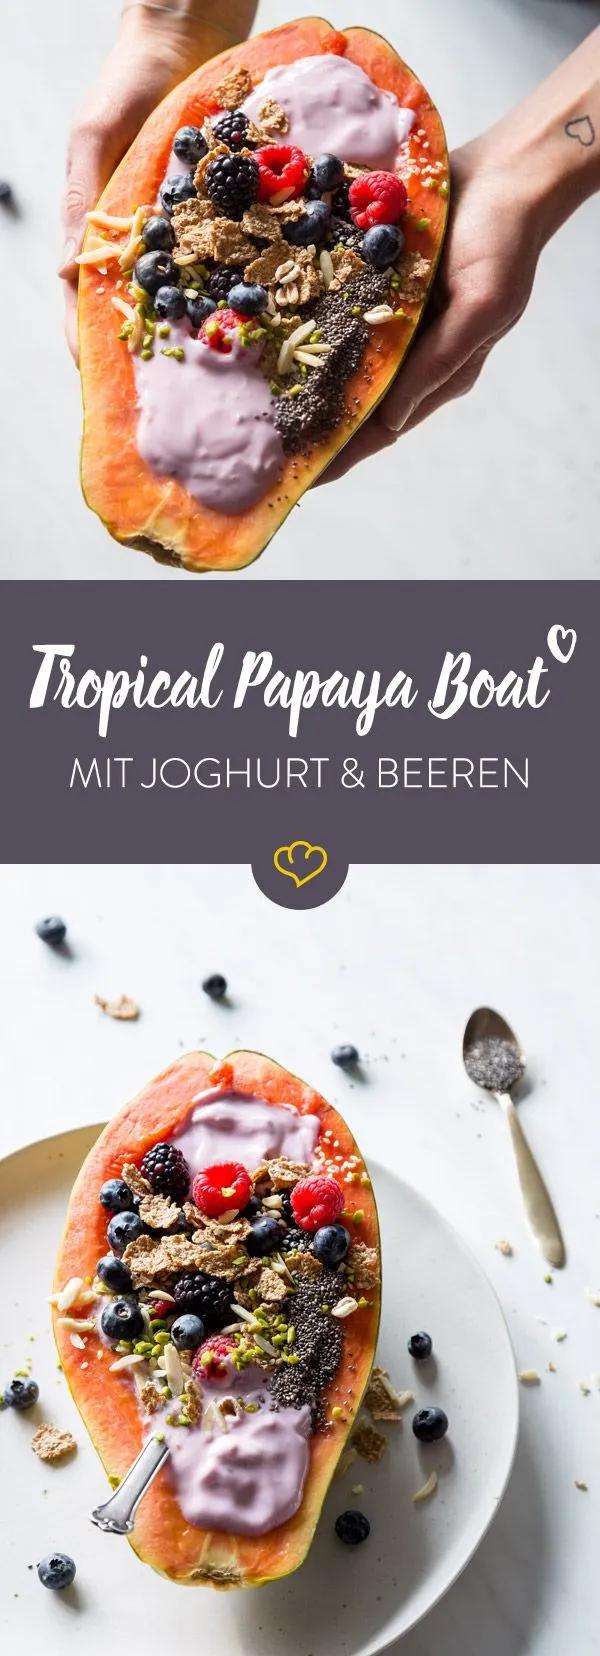 Dieses Tropical Papaya Boat mit Joghurt, Beeren und Nüssen schmeckt ...